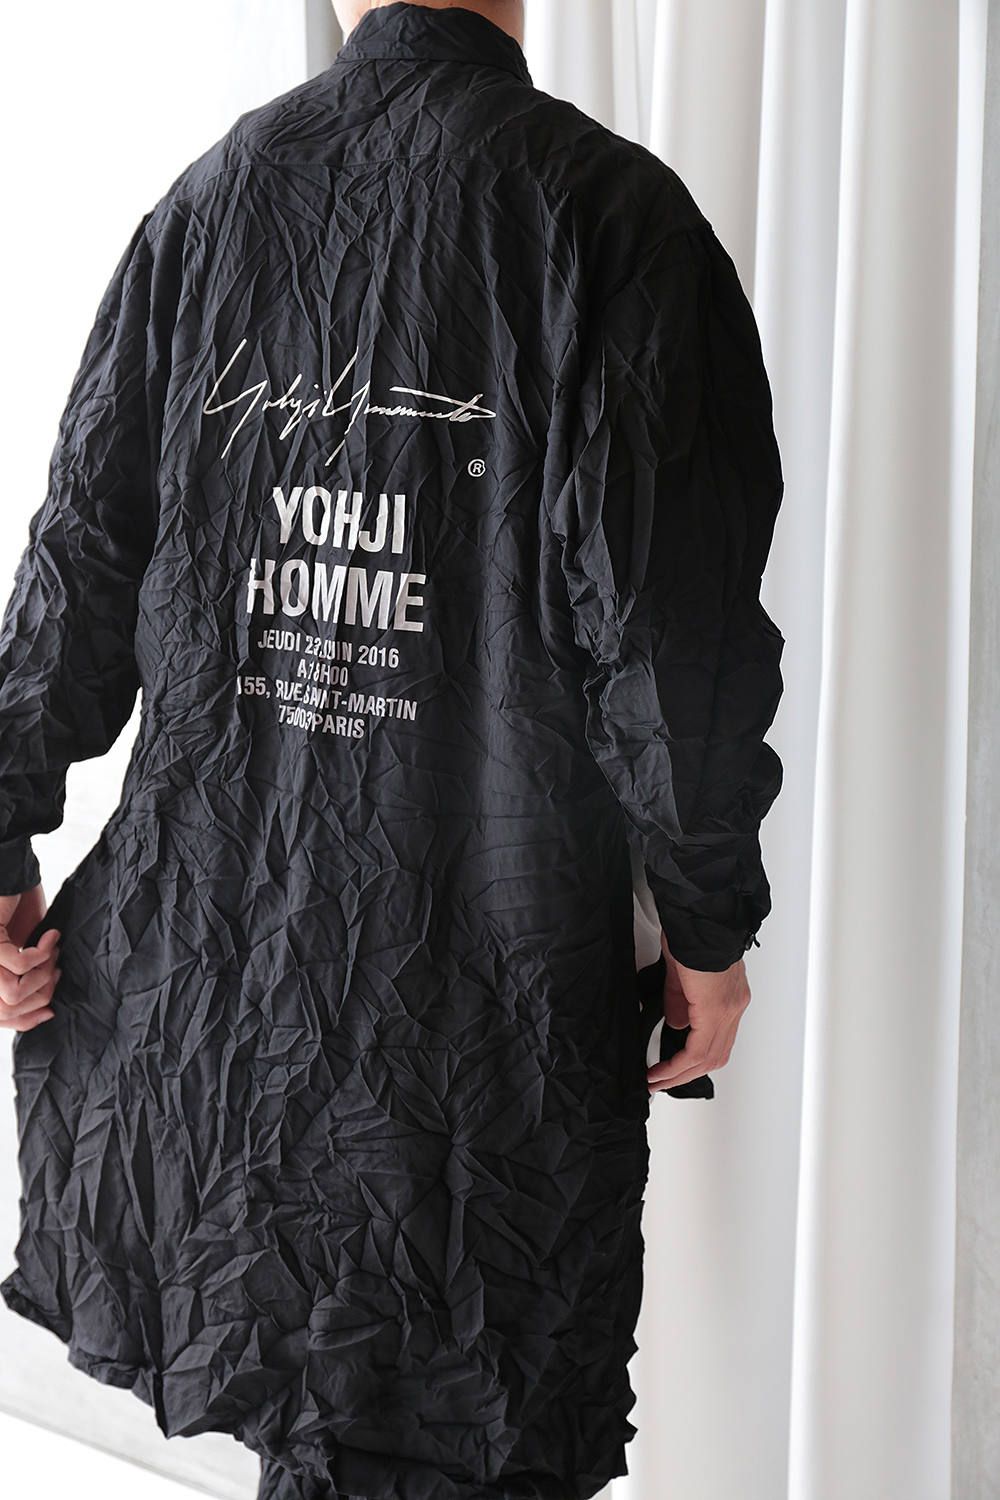 16250円 誠実 Yohji Yamamoto スタッフシャツ 定価57200円 size.L